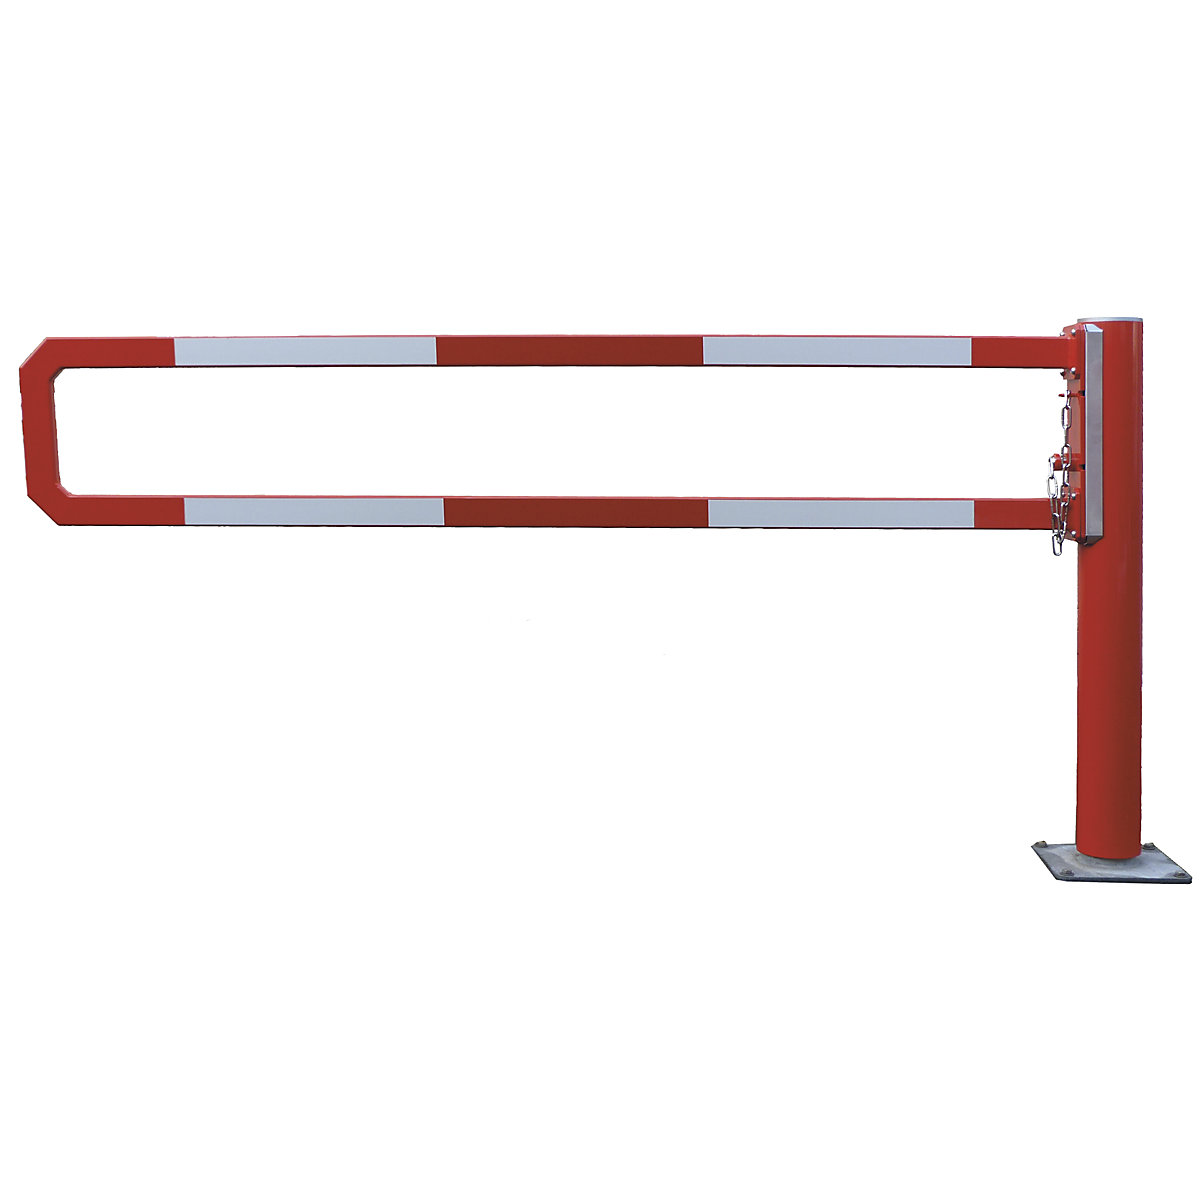 Barrera giratoria – Mannus, anchura útil 1,5 m, galvanizado al horno con recubrimiento en polvo adicional rojo-3